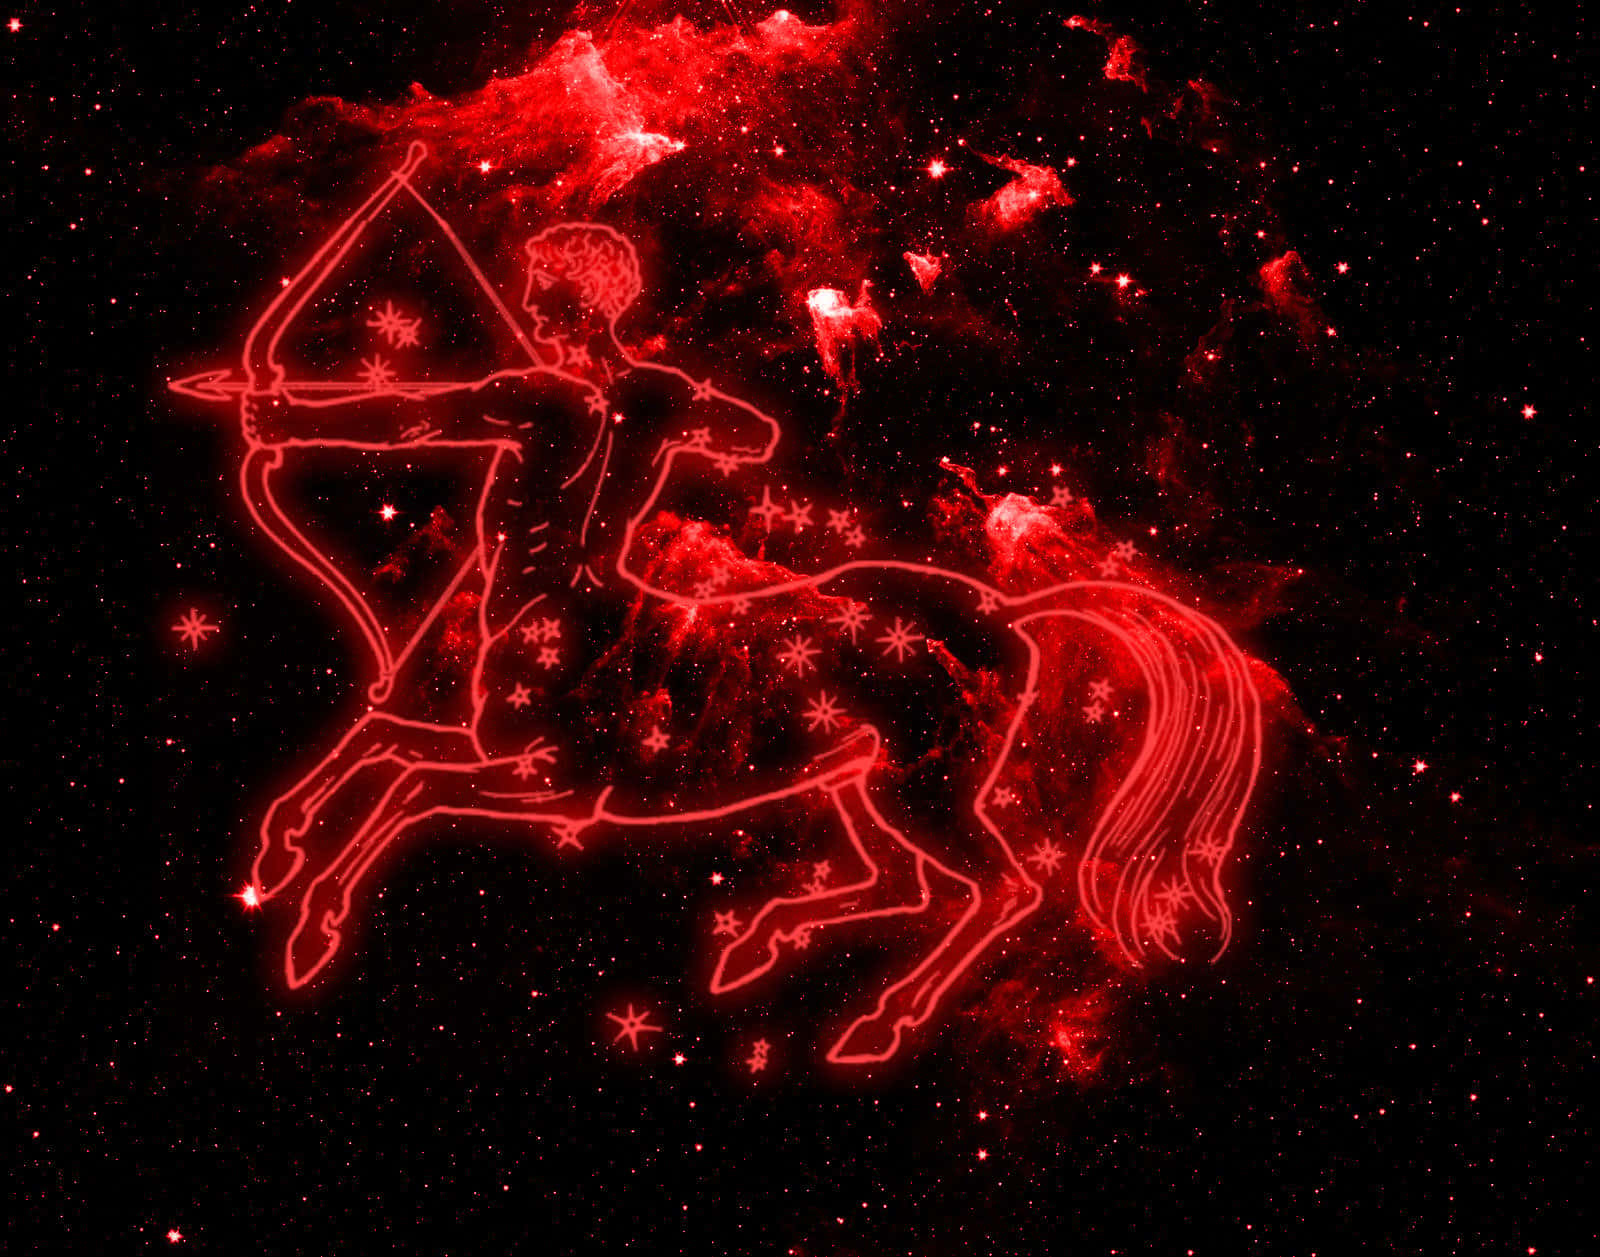 Unsigno Astrológico De Sagitario Mostrando El Símbolo Del Arquero Y El Centauro.